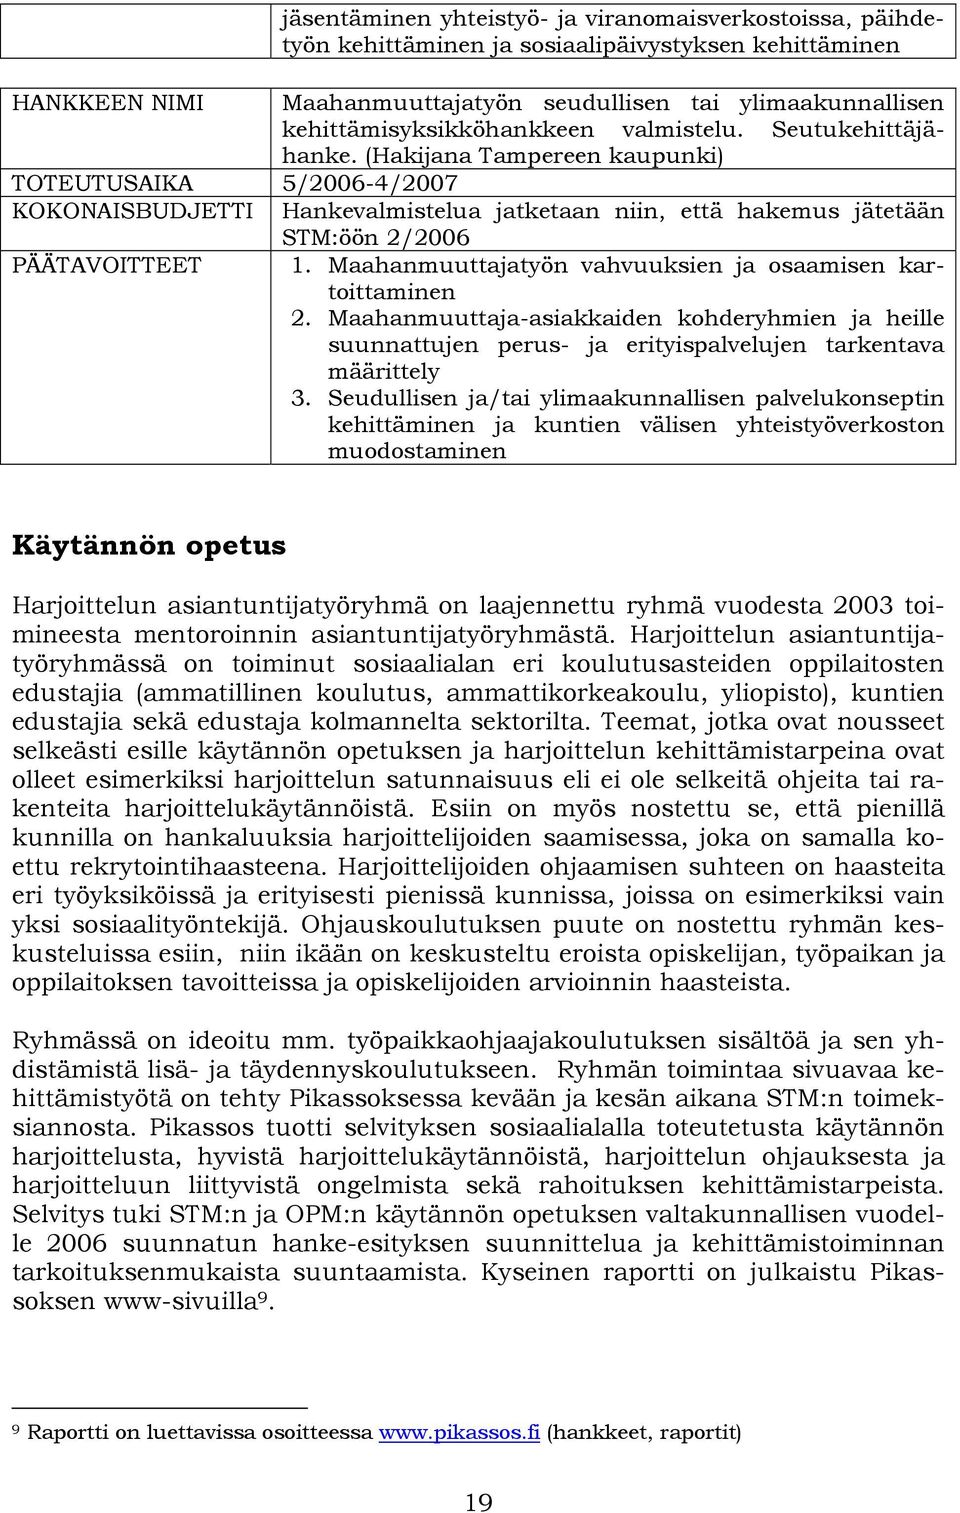 (Hakijana Tampereen kaupunki) TOTEUTUSAIKA 5/2006-4/2007 KOKONAISBUDJETTI Hankevalmistelua jatketaan niin, että hakemus jätetään STM:öön 2/2006 PÄÄTAVOITTEET 1.